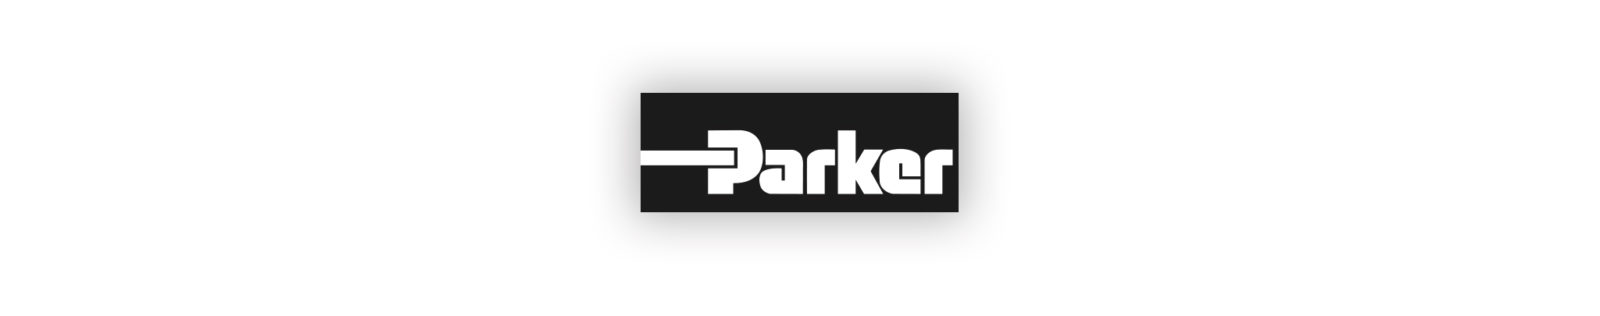 Parker Catalogue Portfolio 6